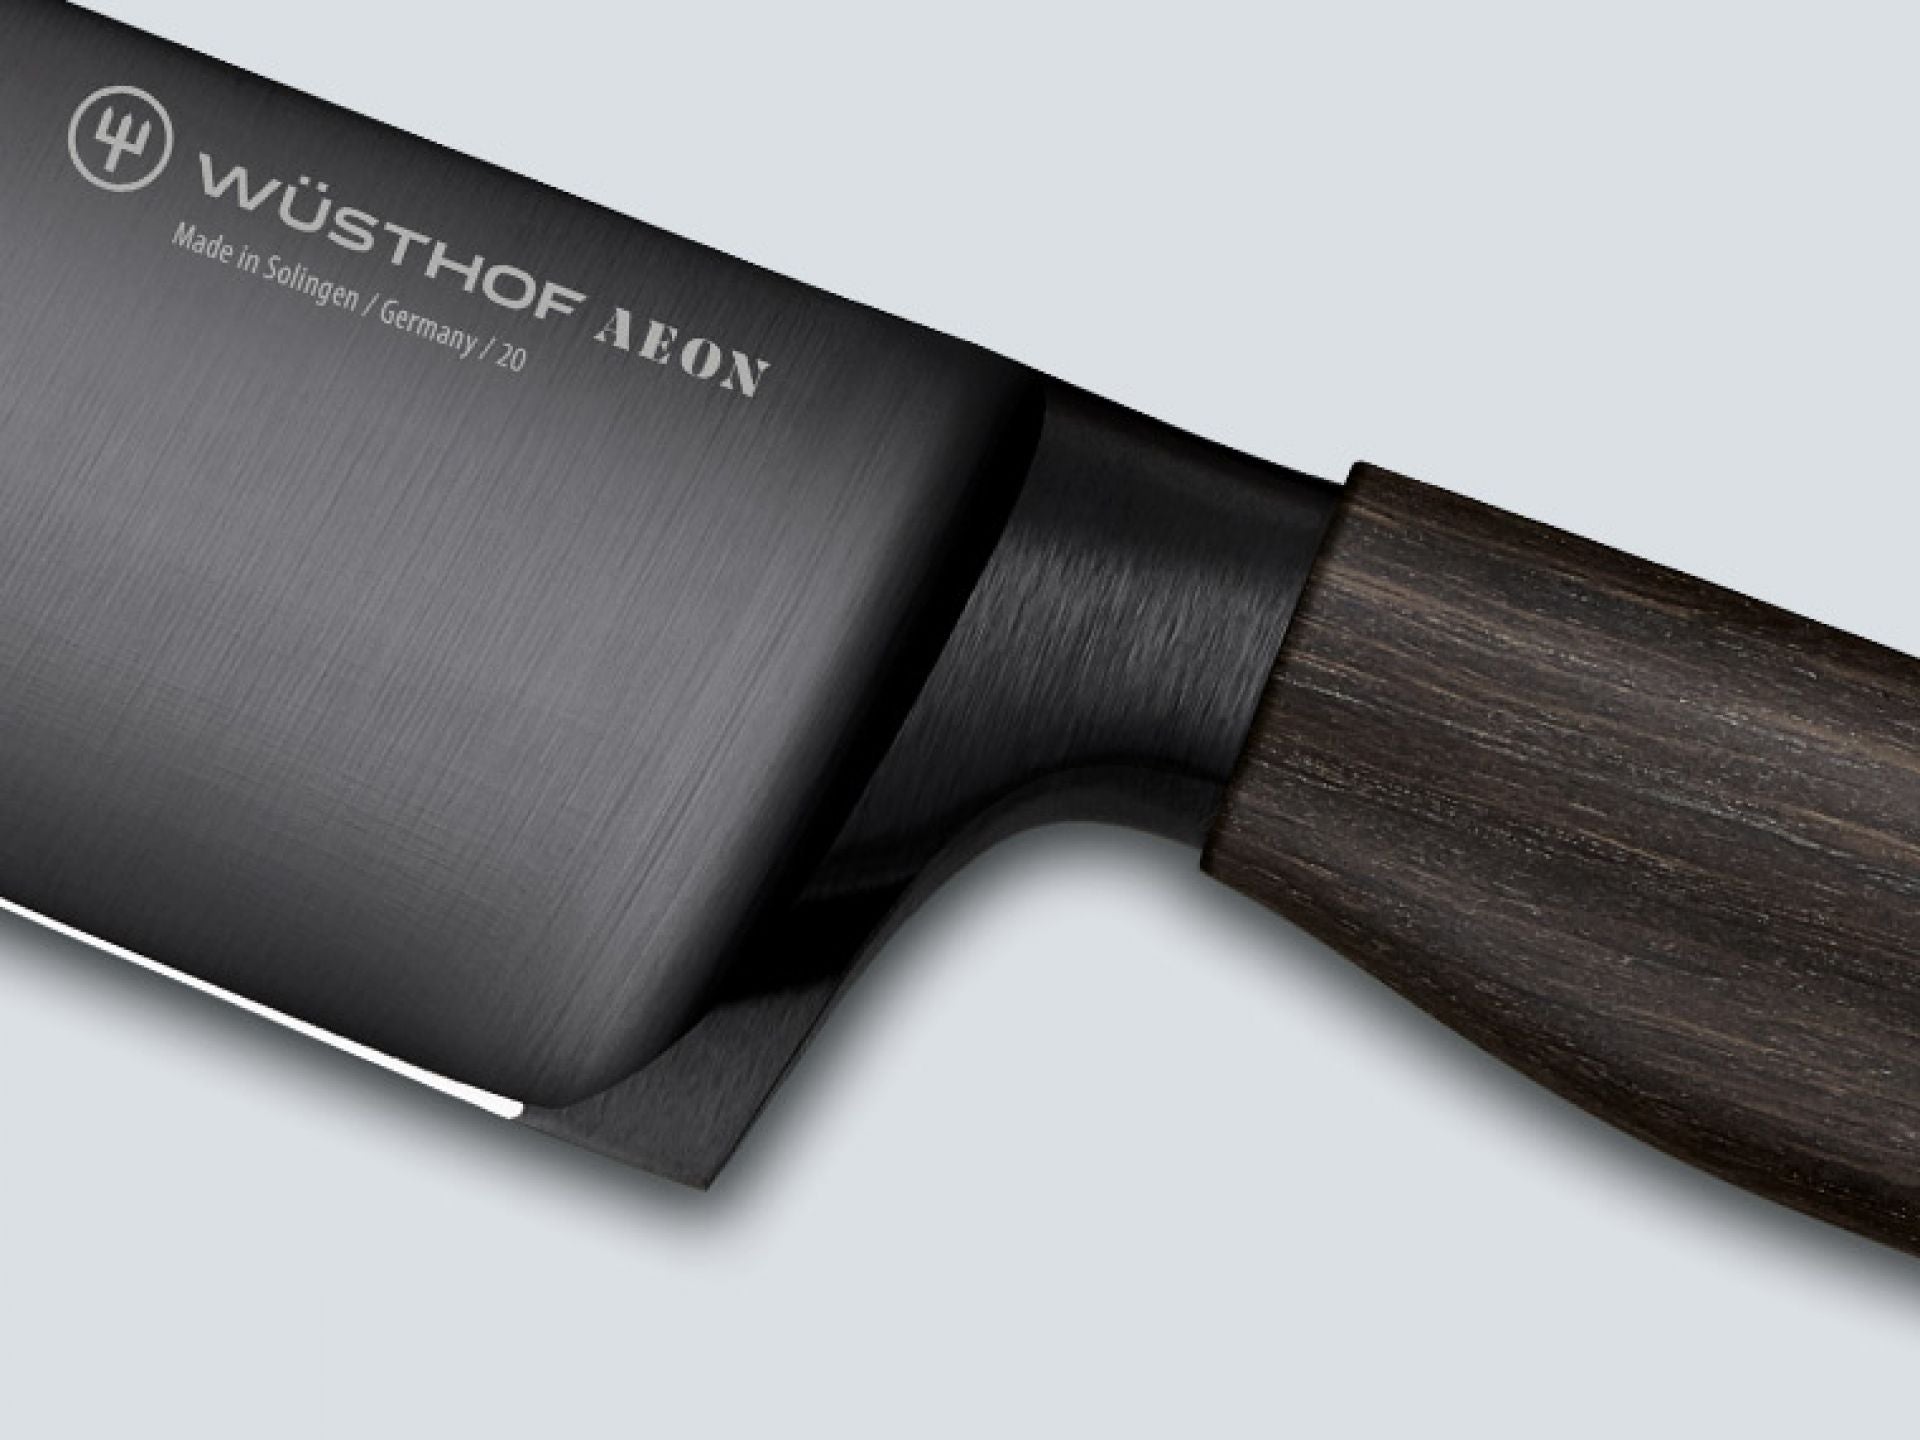 Wusthof Aeon coltello Santoku 17 cm. edizione limitata